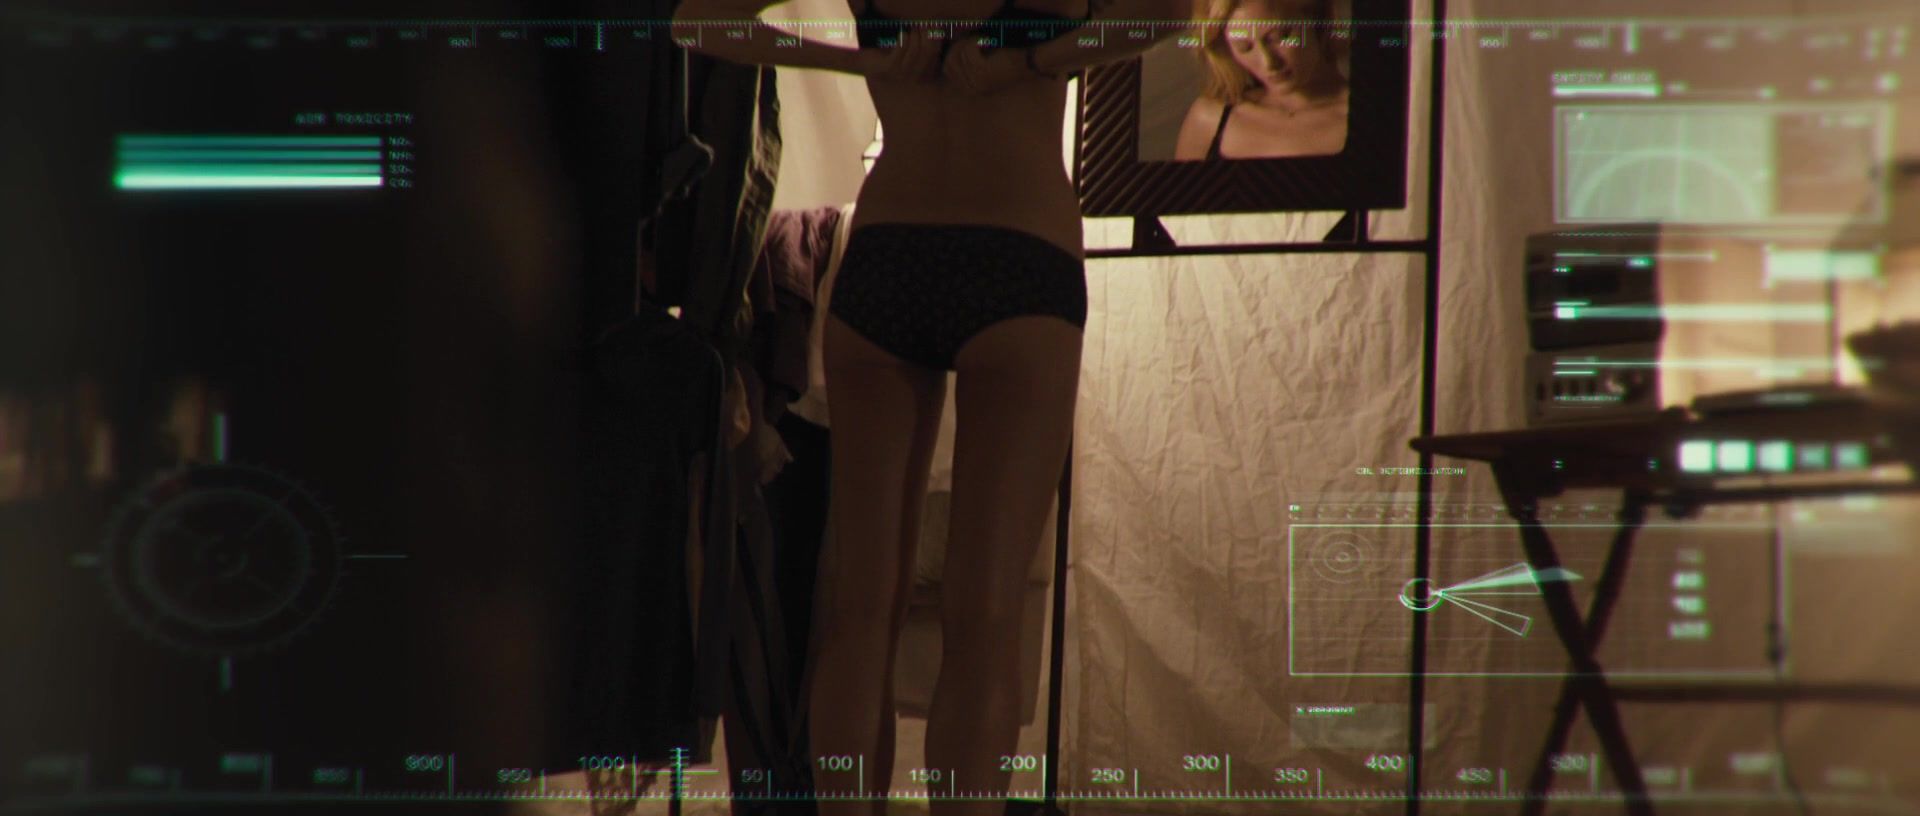 Blackdick Hot actress Ashley Hinshaw from movie The Pyramid (2014) Worship